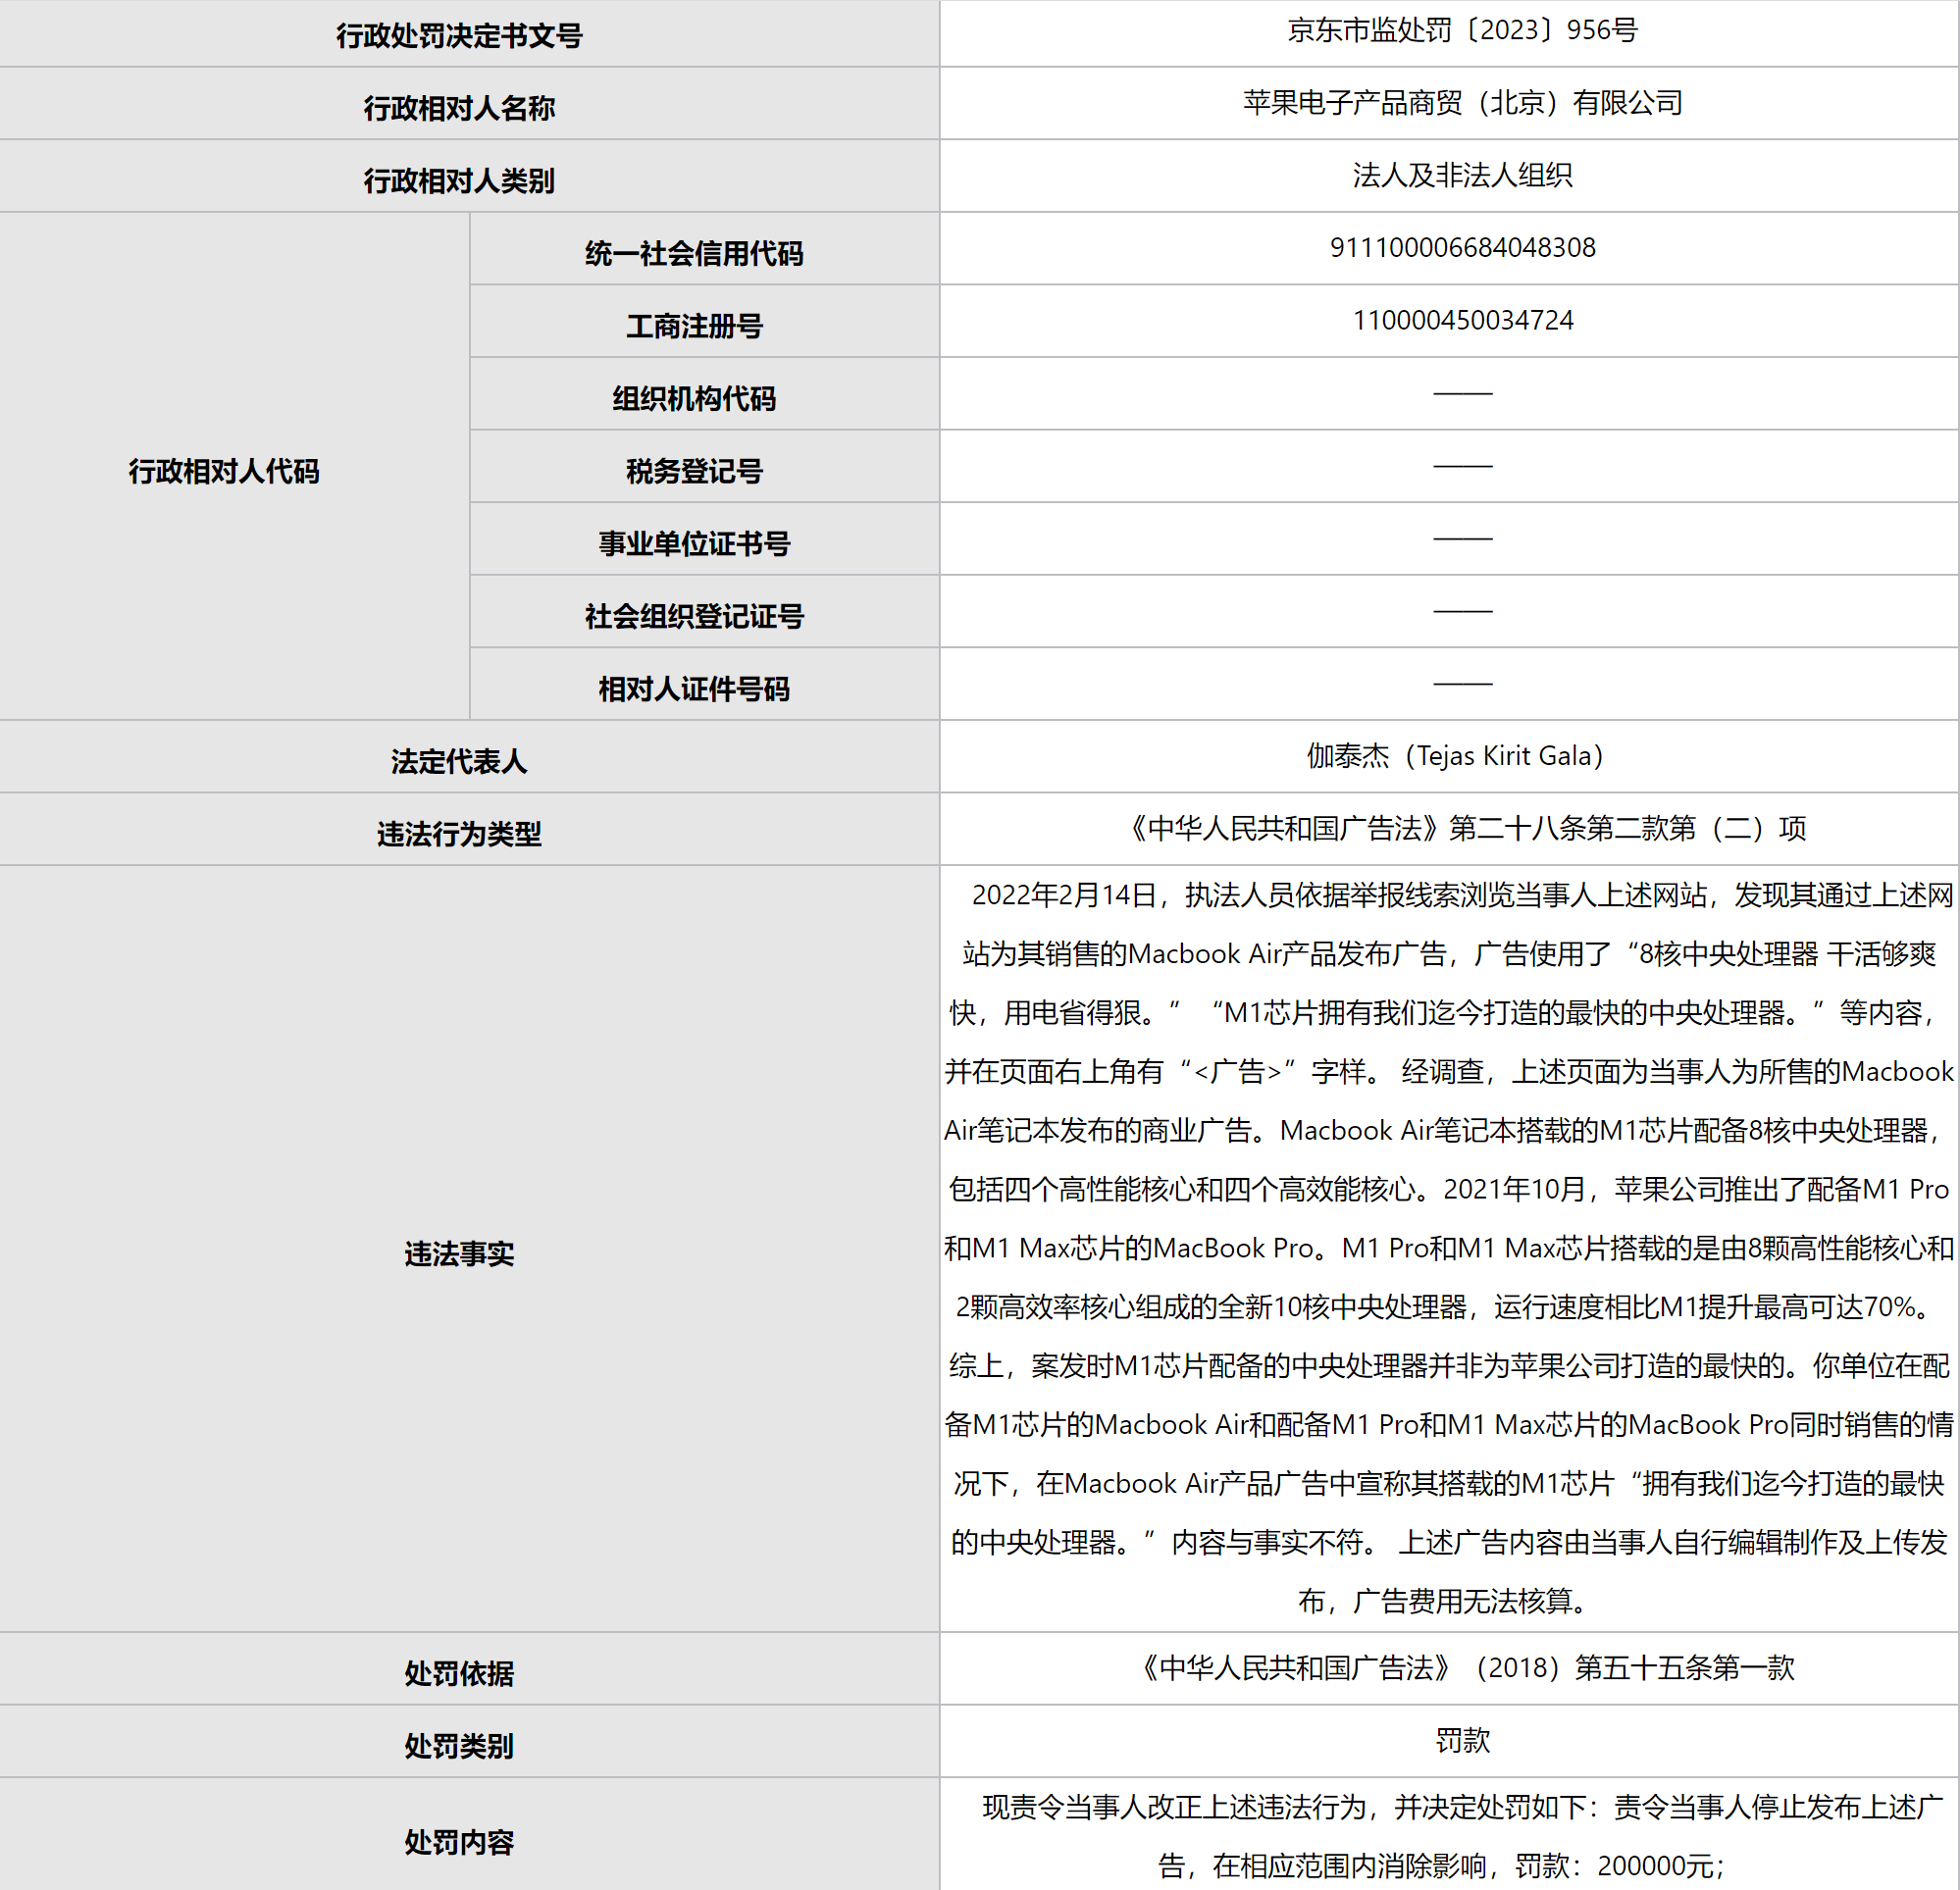 苹果因发布虚假广告，被北京市场监管部门行政处罚 20 万元